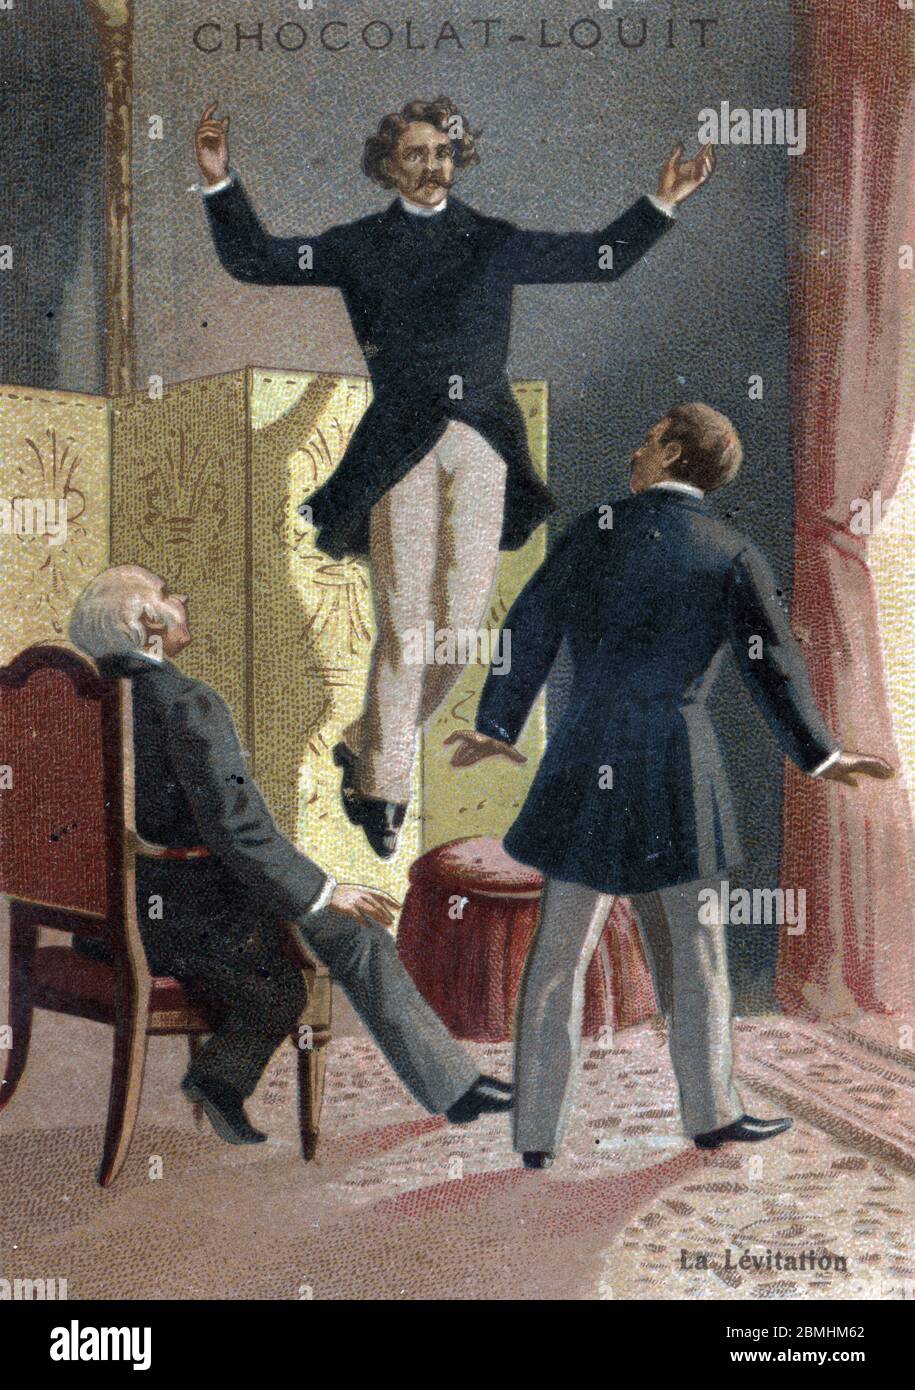 Phenomene paranormal : la levitation du medium et voyant ecossais Daniel Dunglas Home (1833-1886) s'elevant dans les airs sous les yeux de temoins stu Stock Photo